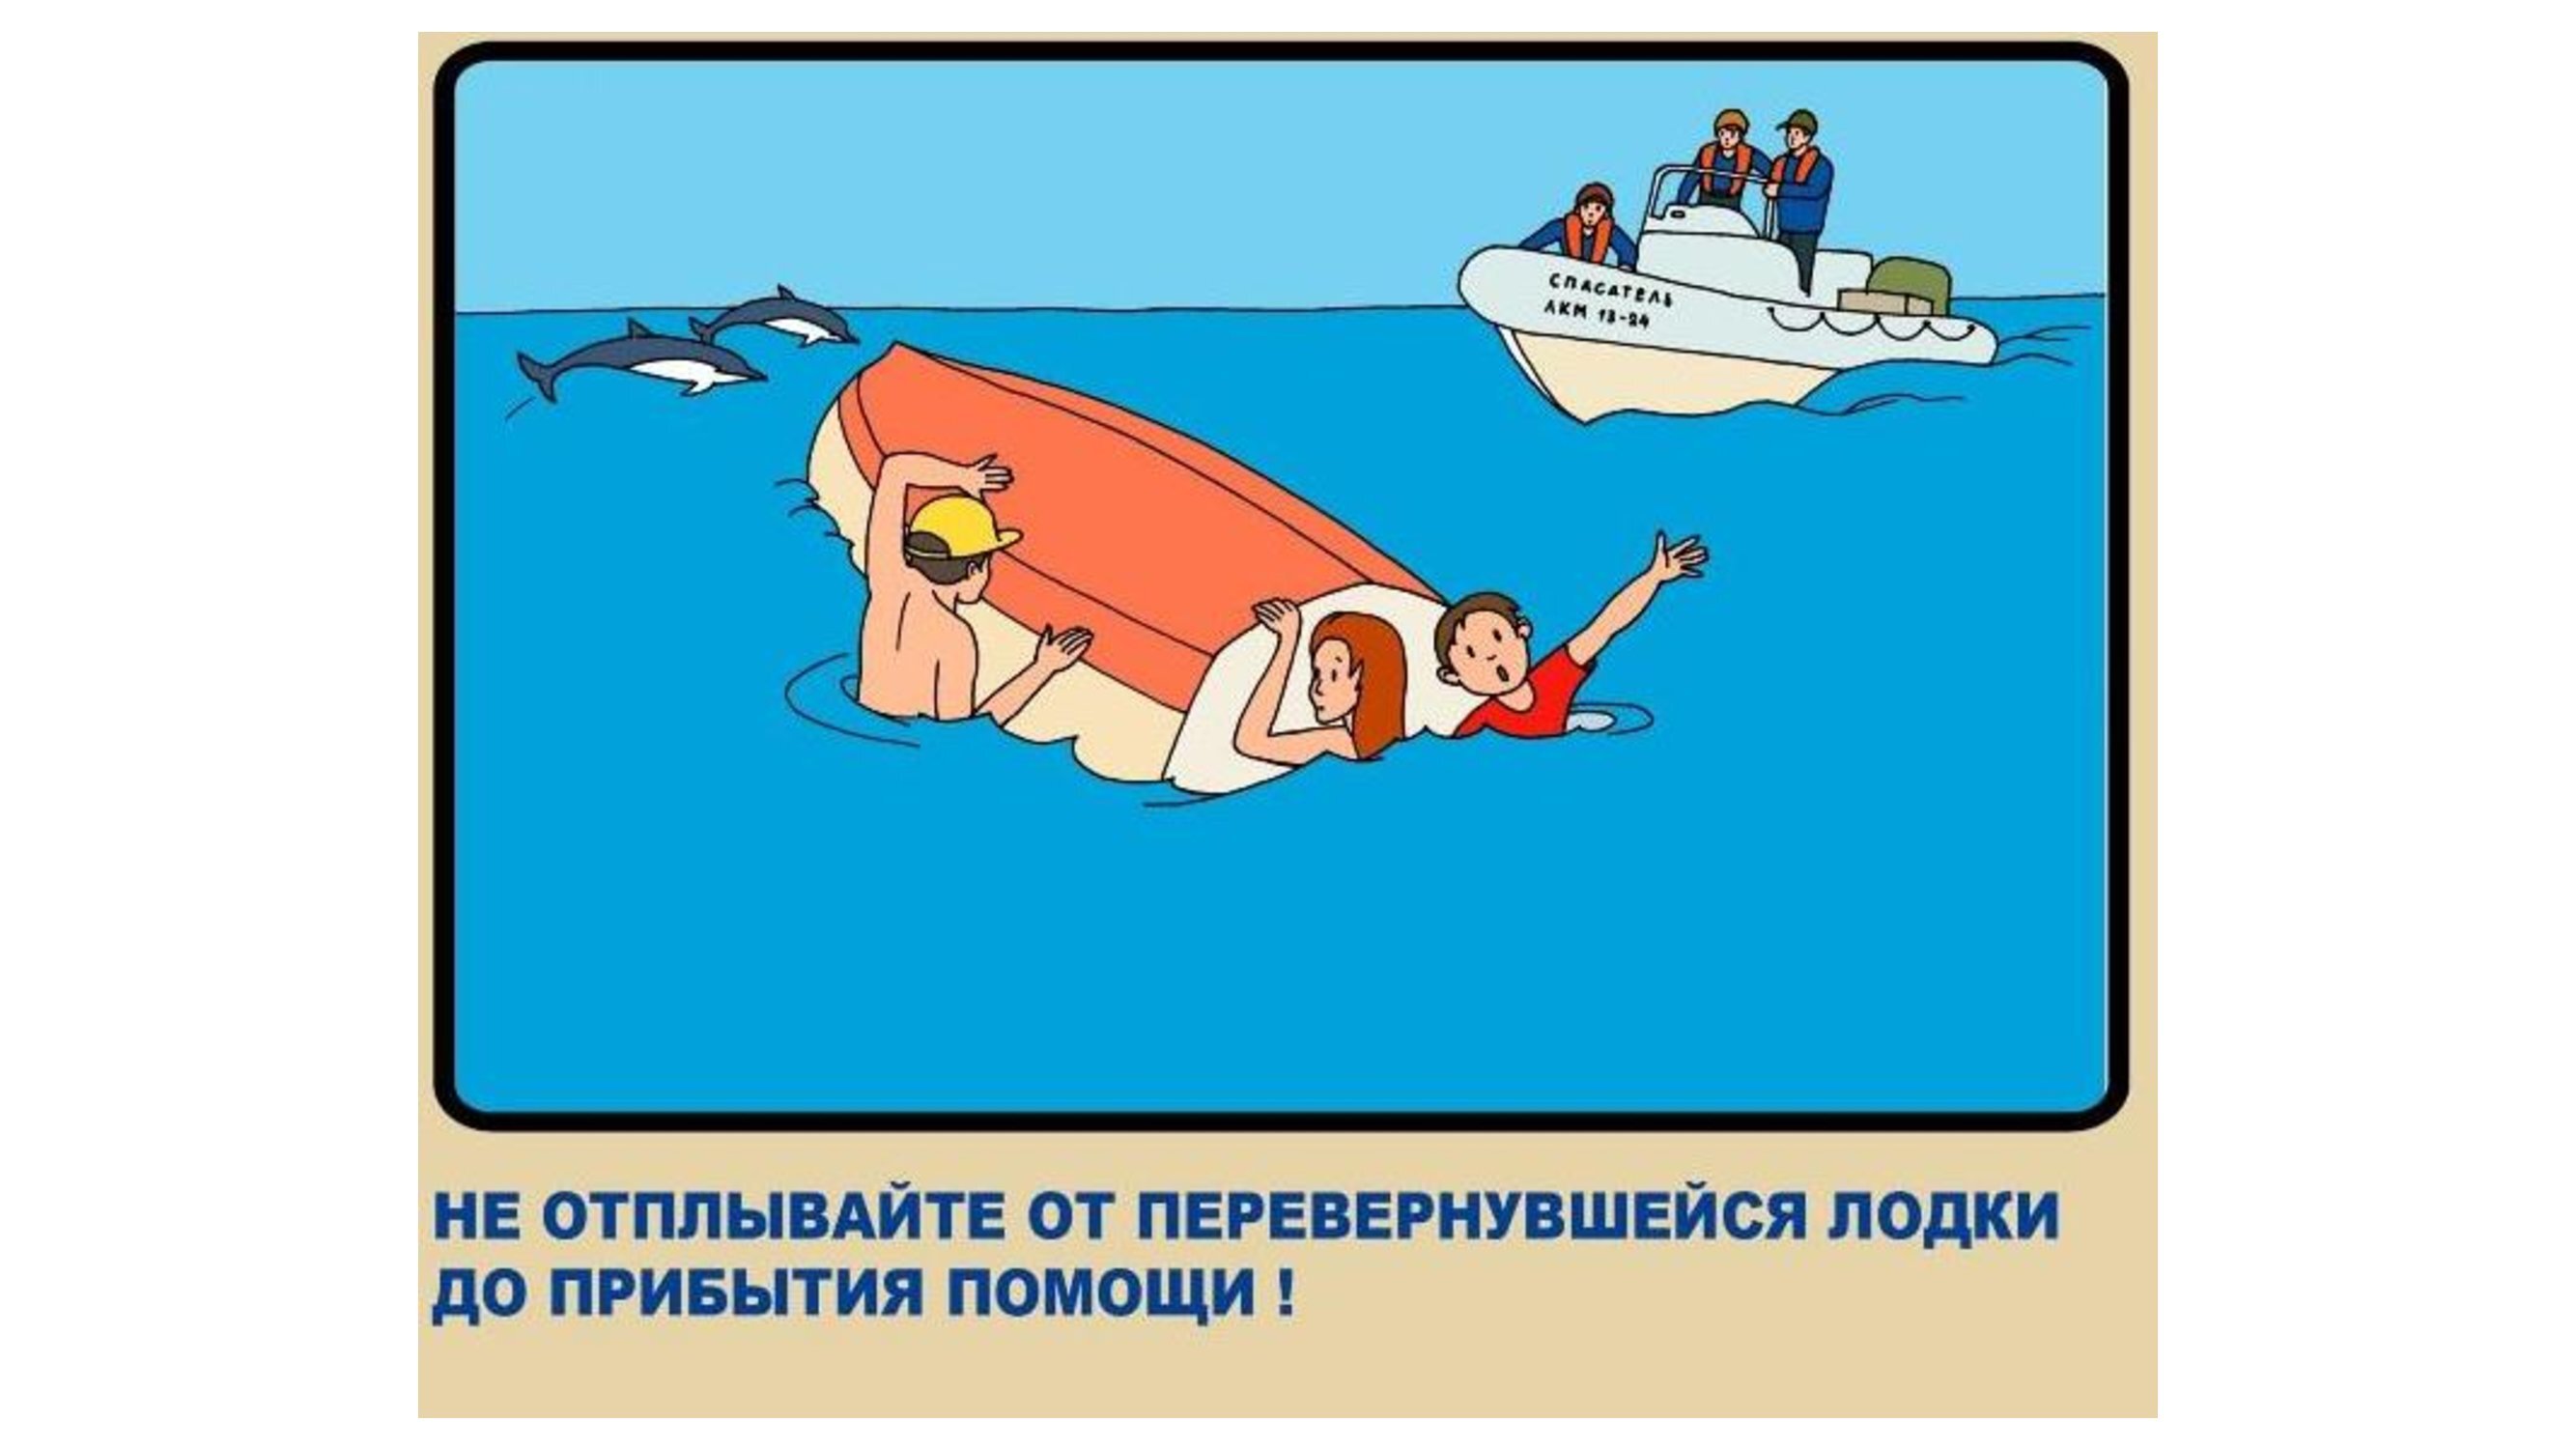 Плакат соблюдение правил. Безопасное поведение в лодк. Меры безопасности на корабле. Безопасность на катере. Правила поведения на лодке на воде.